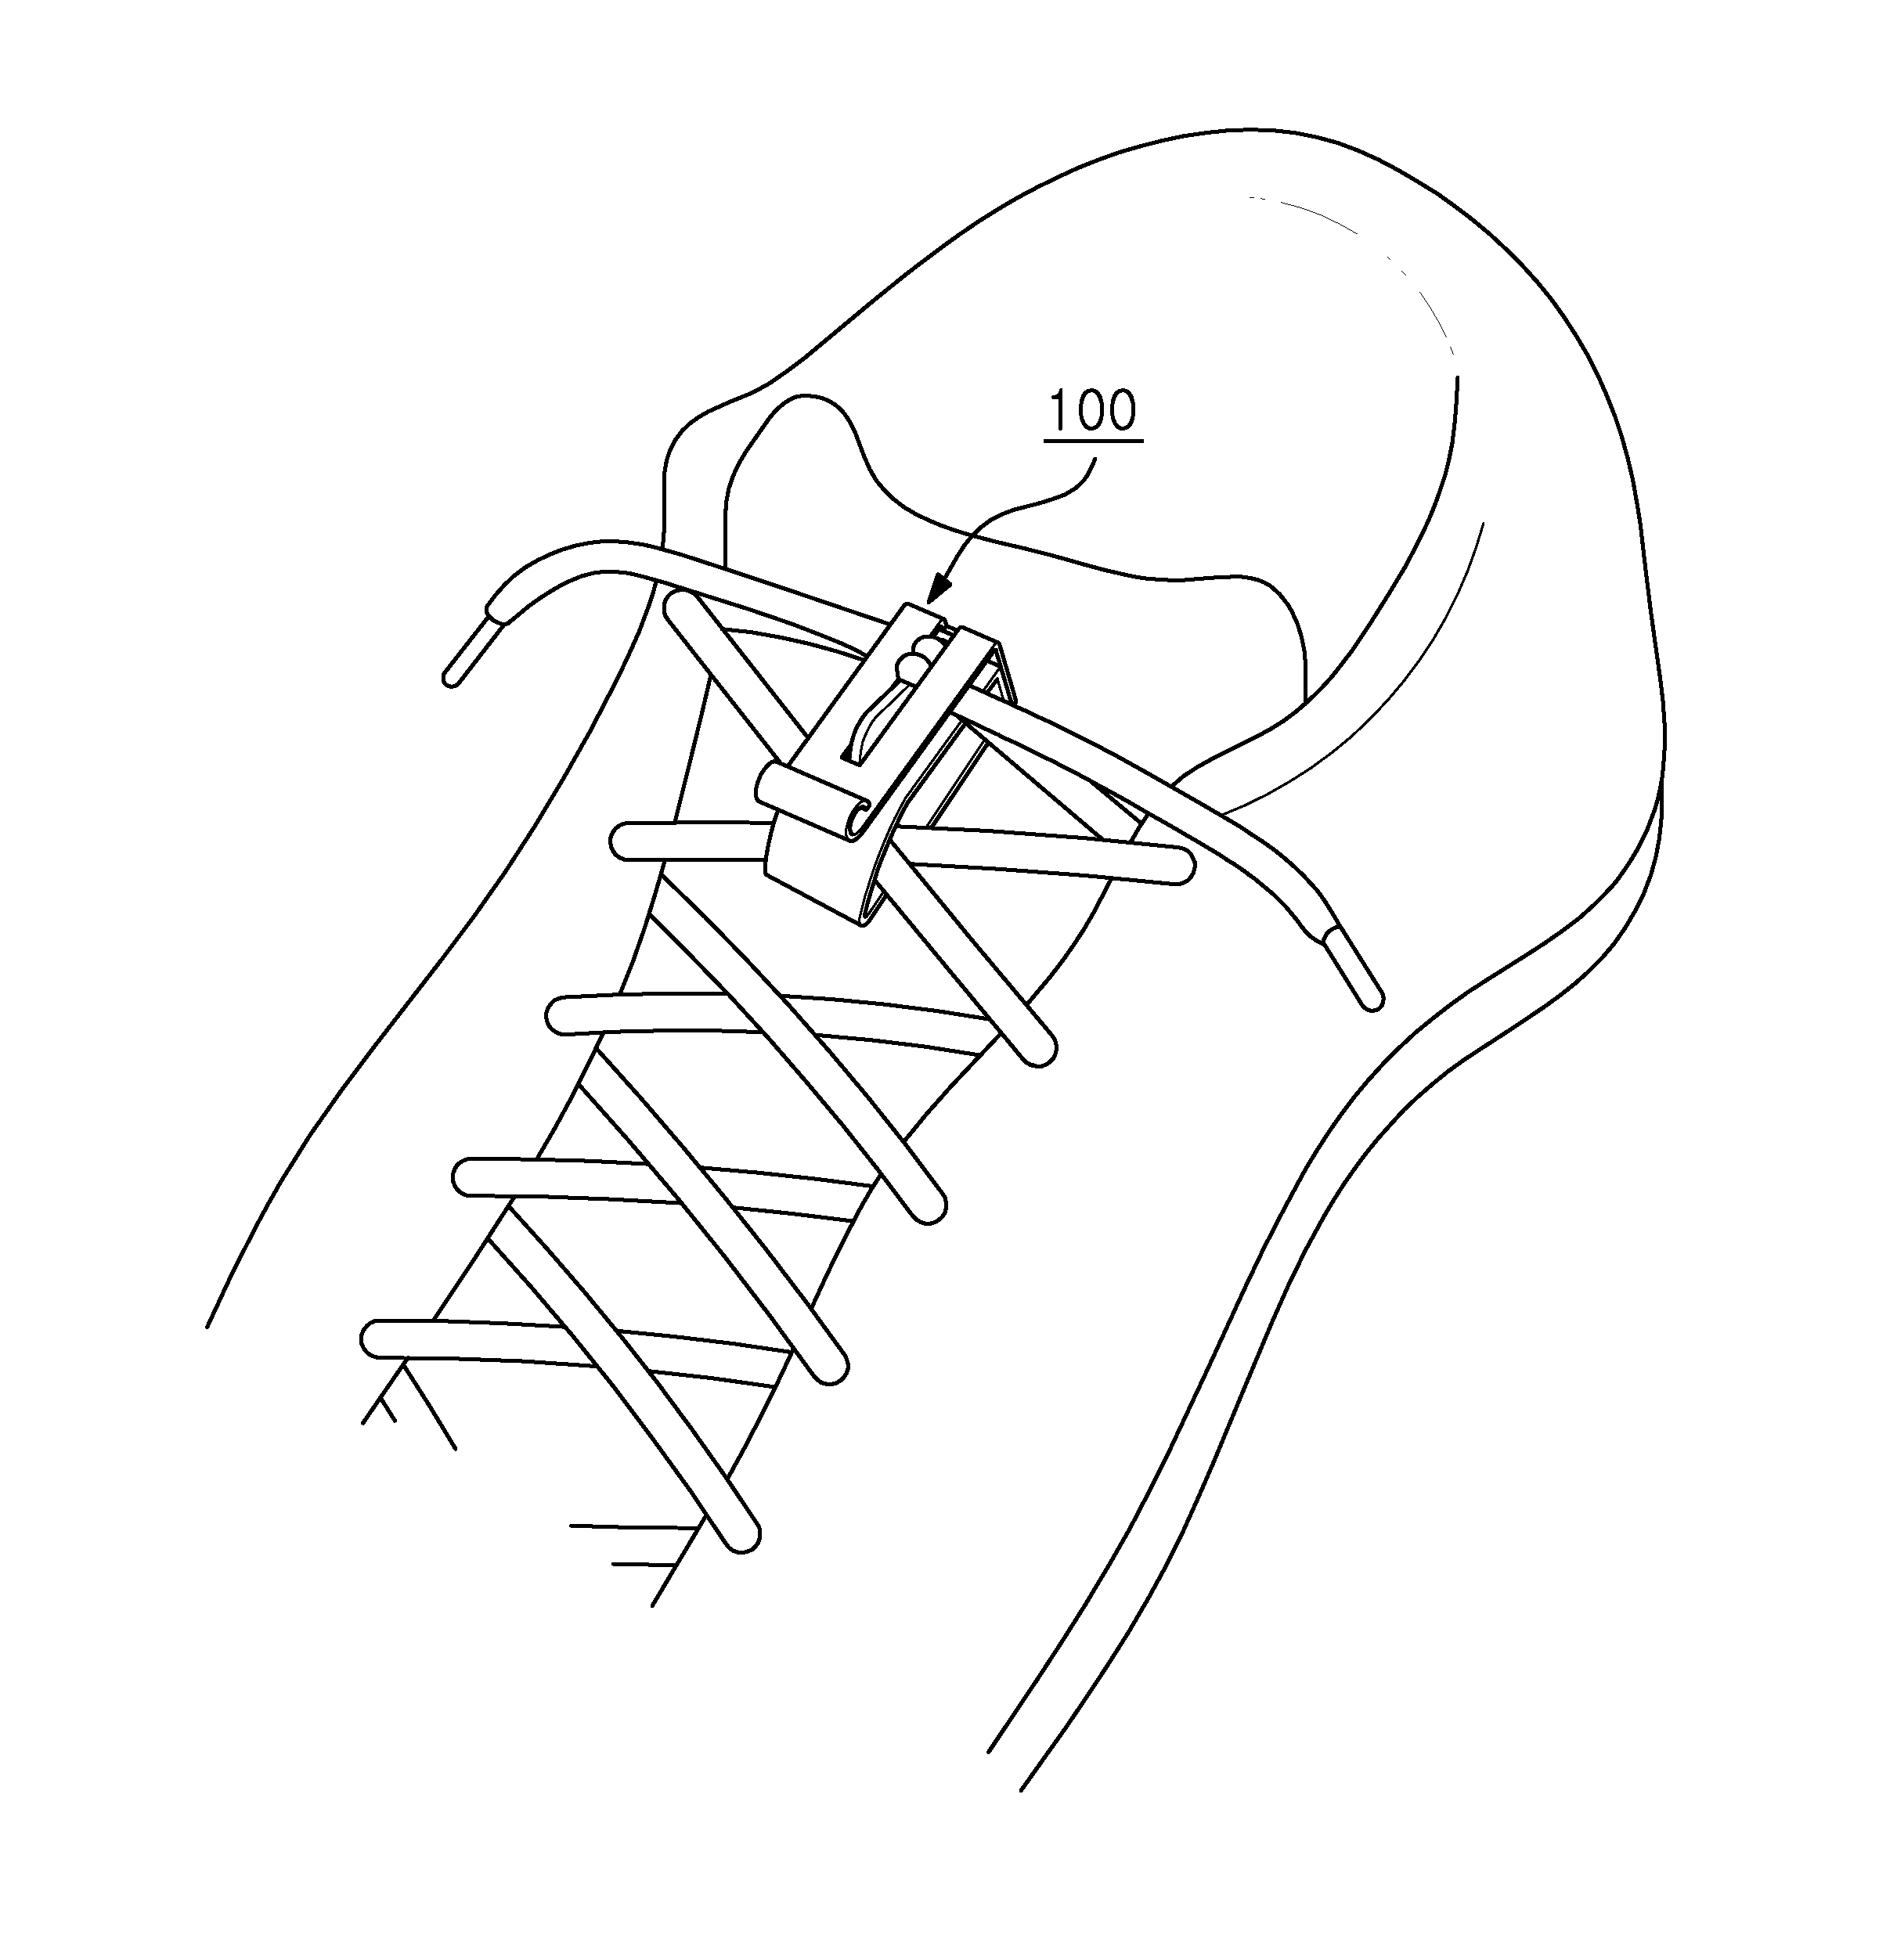 Shoelace retaining device